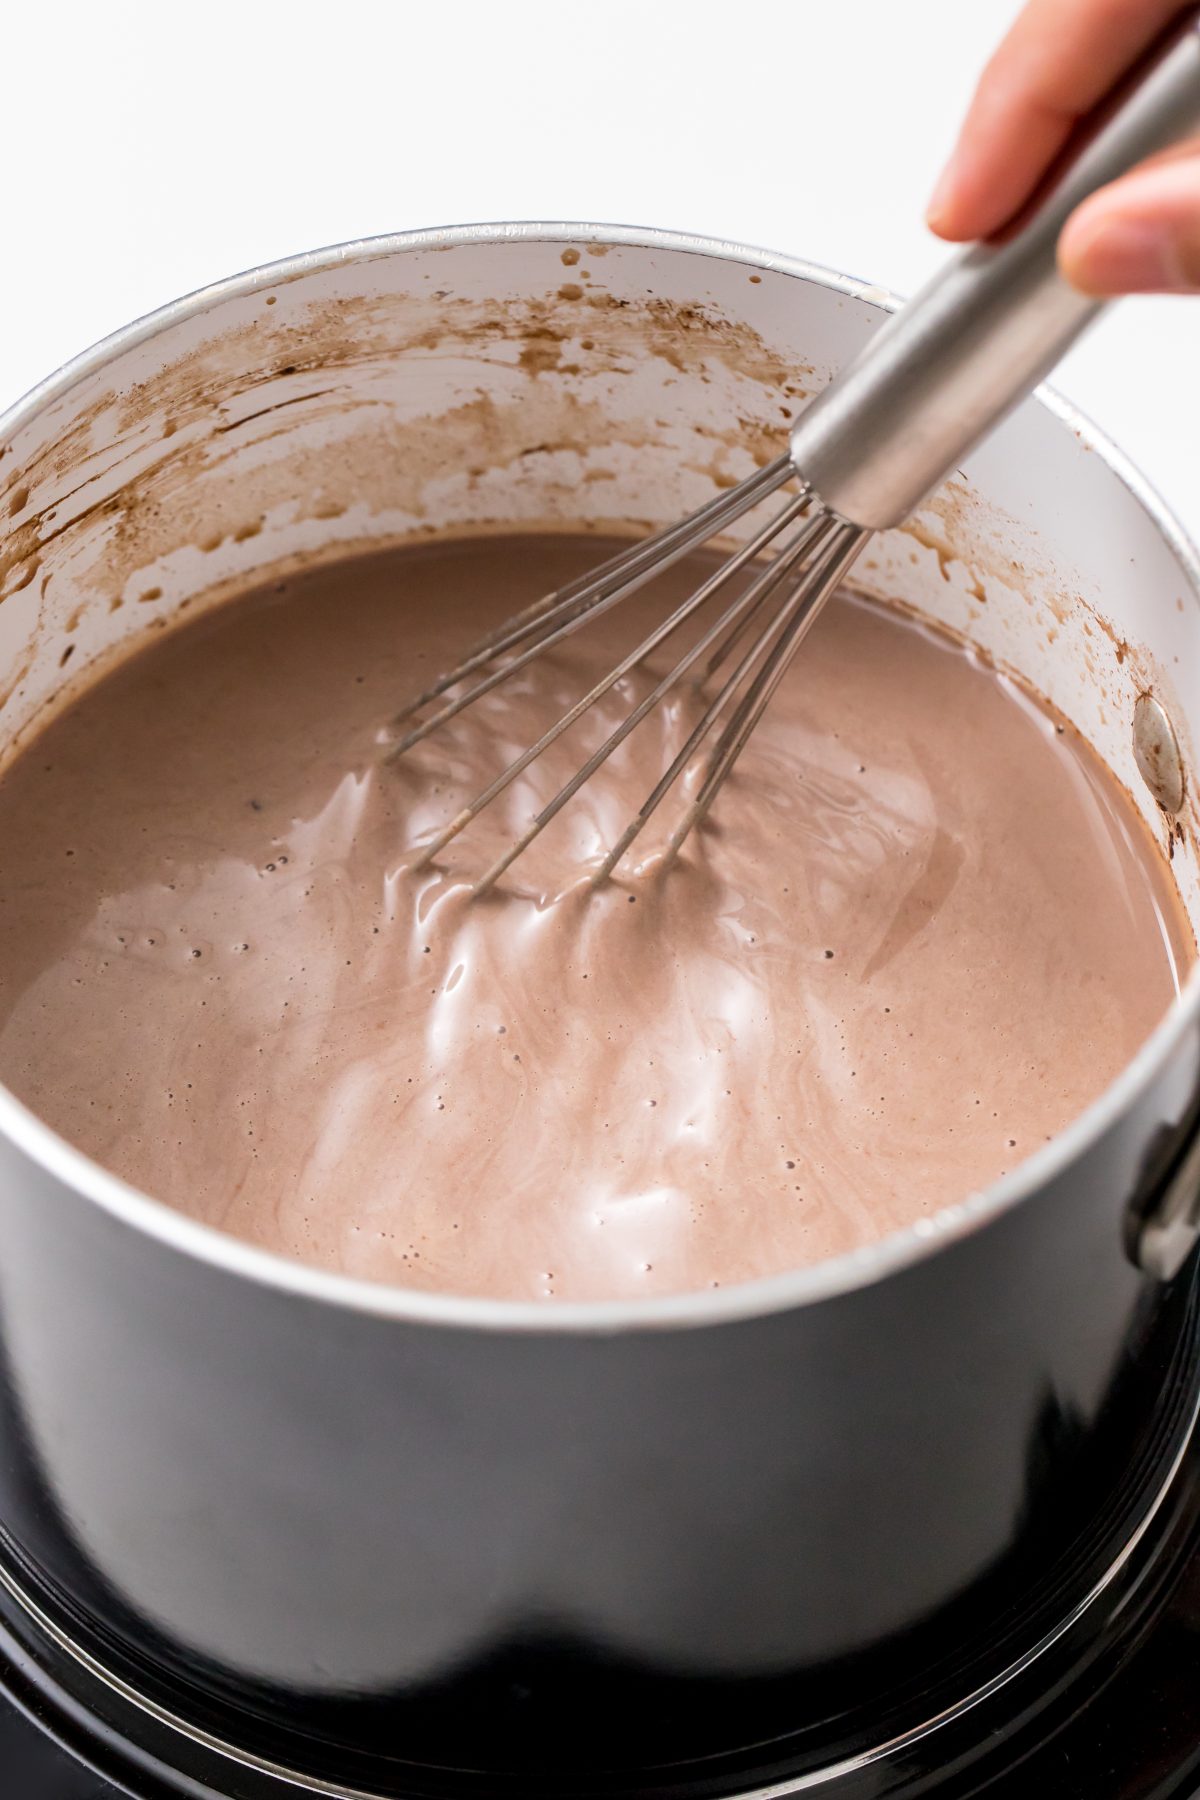 5D4B1649 - Dulce de Leche Hot Chocolate - Combine milk, cocoa powder, spices, and vanilla